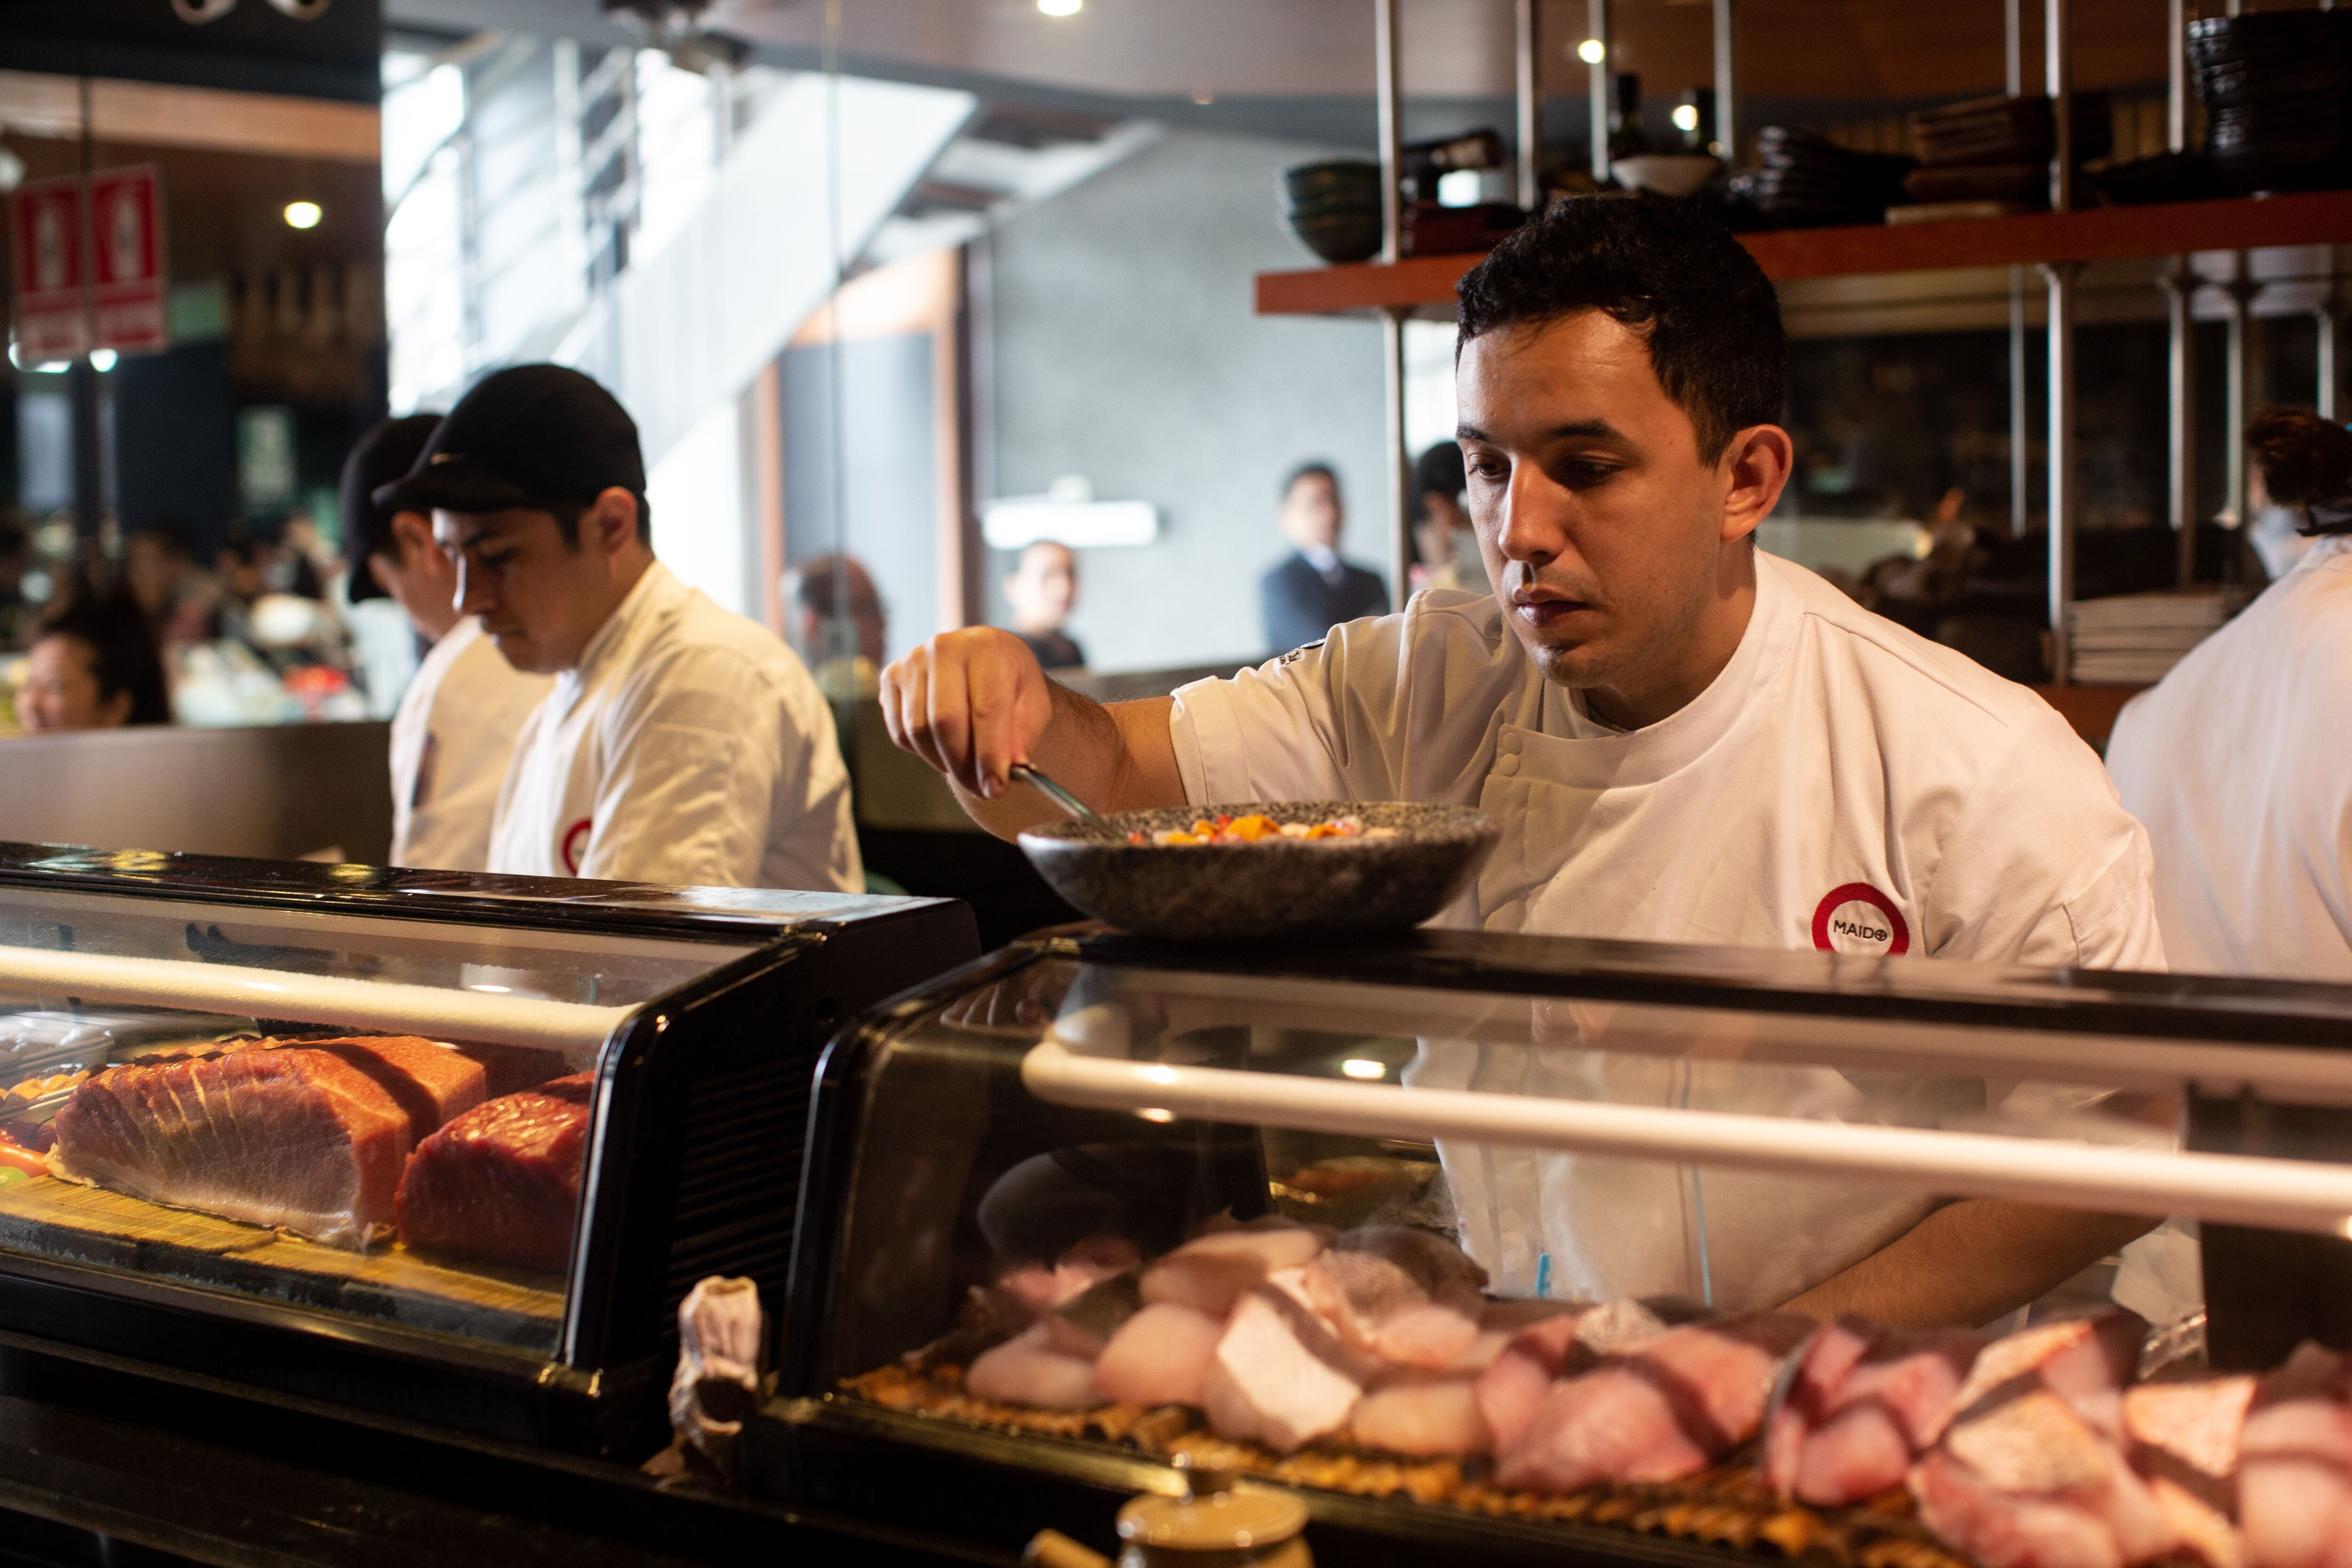 En Maido, elegido el Mejor restaurante de América Latina por los 50 Best, encuentras experiencias de 899, 1.549 y 1.249 soles por persona.